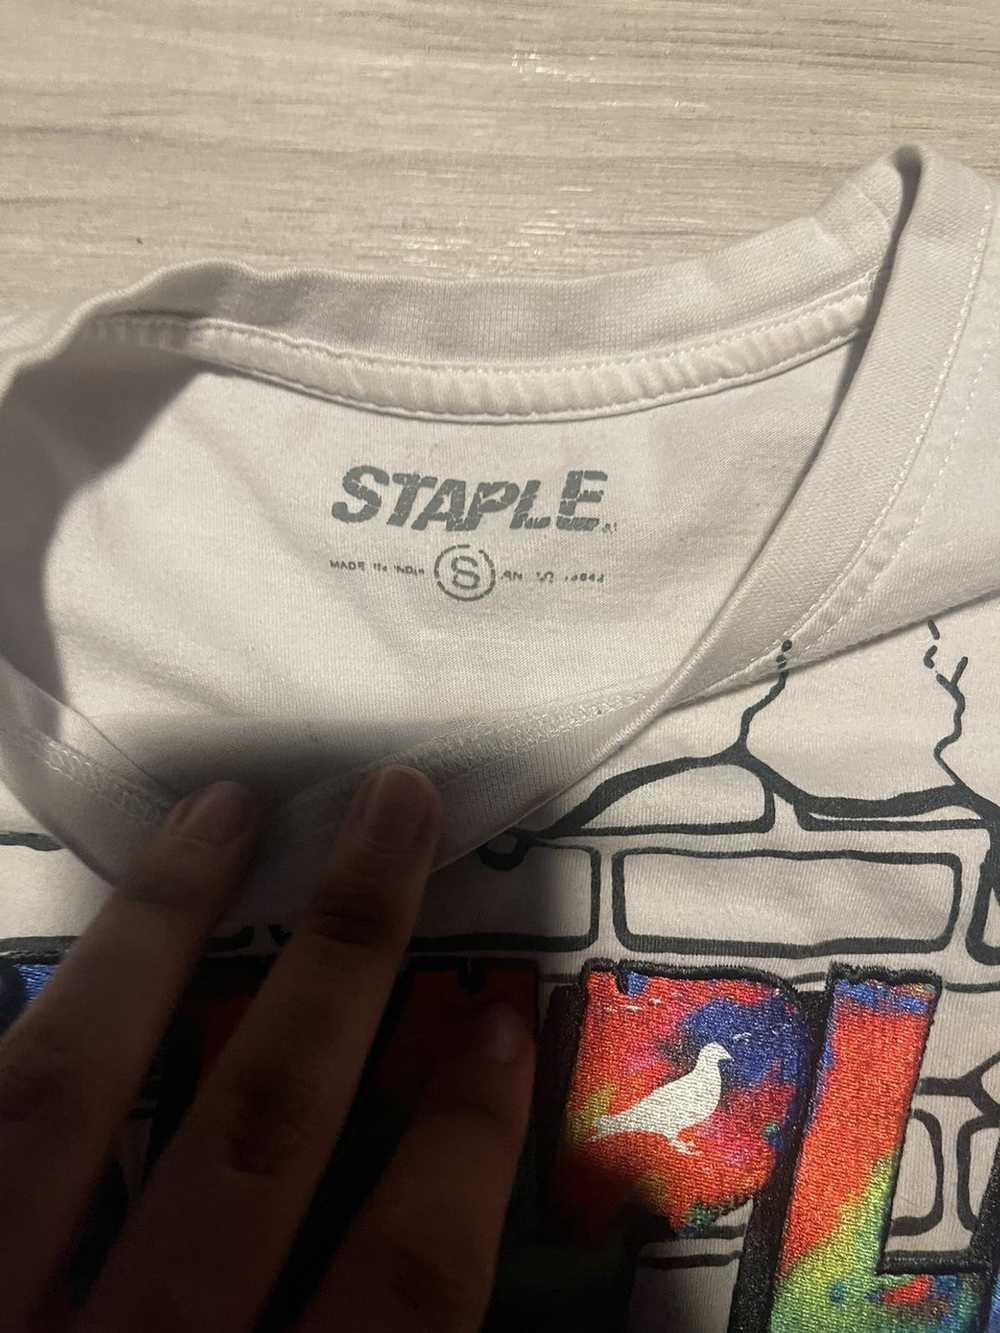 Staple staple shirt - image 2